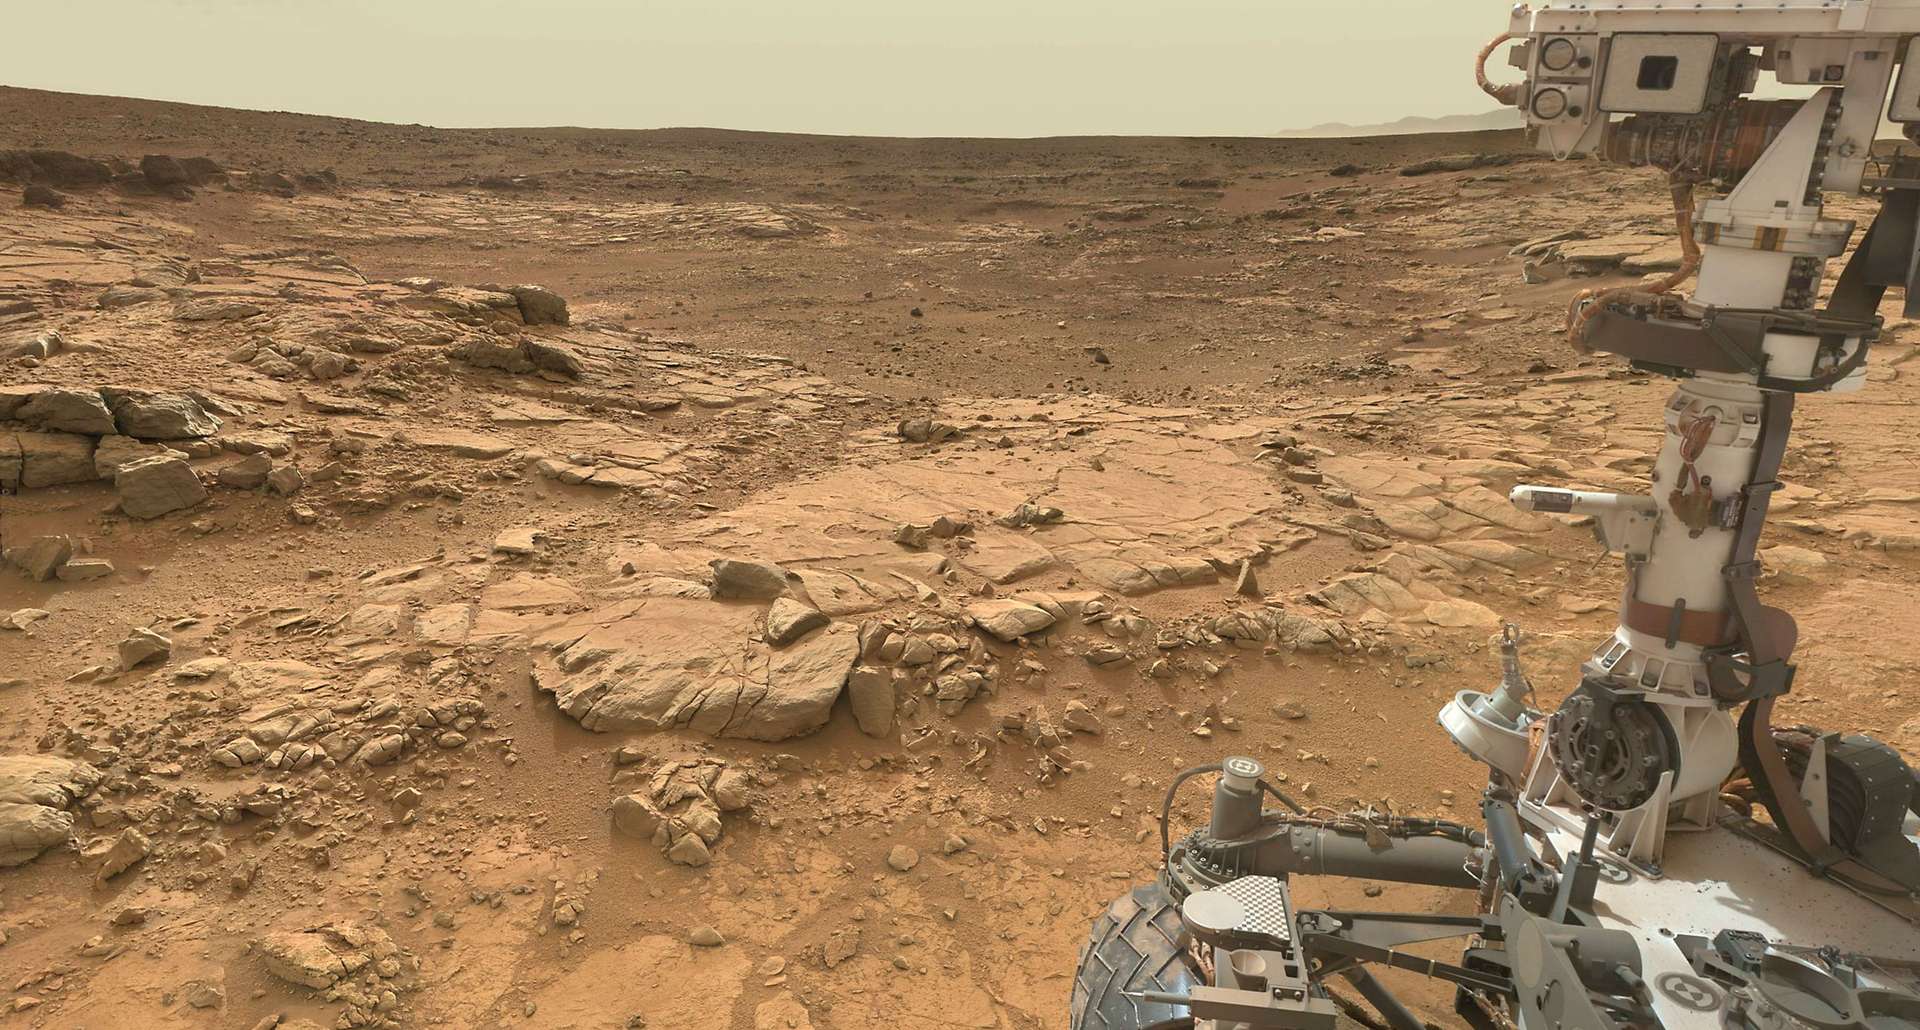 Le rover arpente le paysage martien depuis 10 ans maintenant. © Nasa